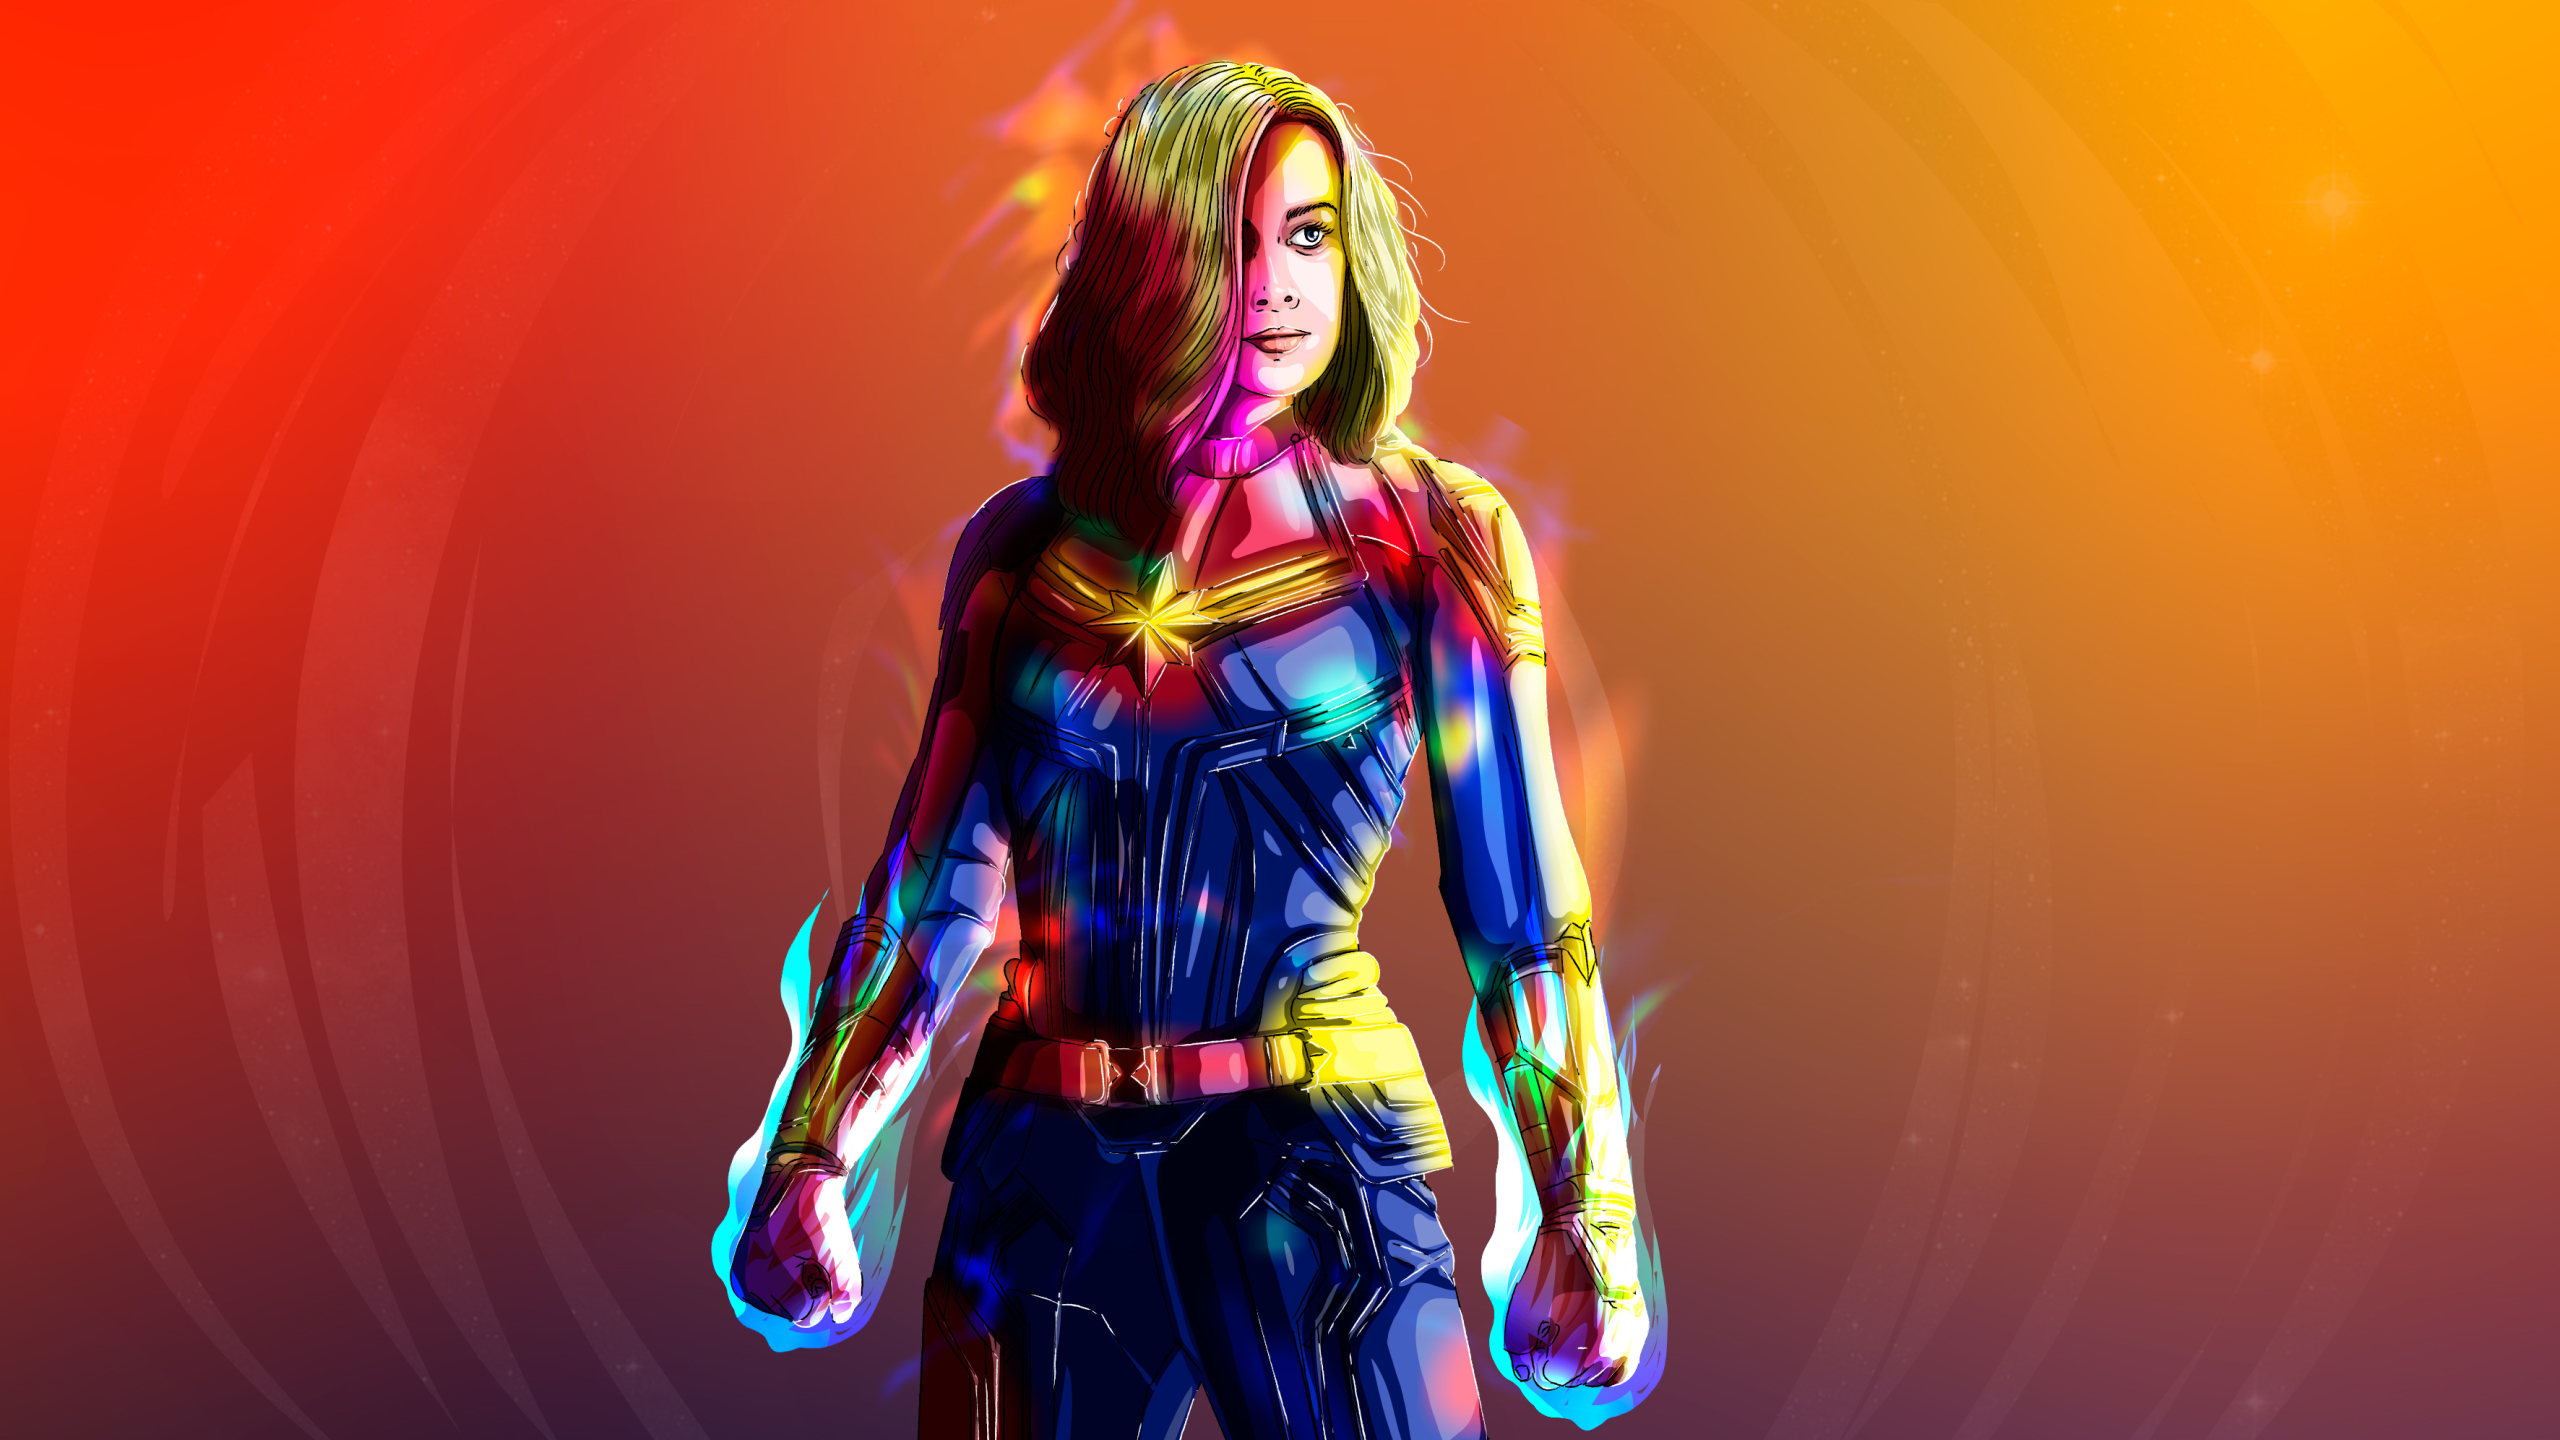 Brie Larson as Captain Marvel Artwork (2560x1440) Resolution Wallpaper.